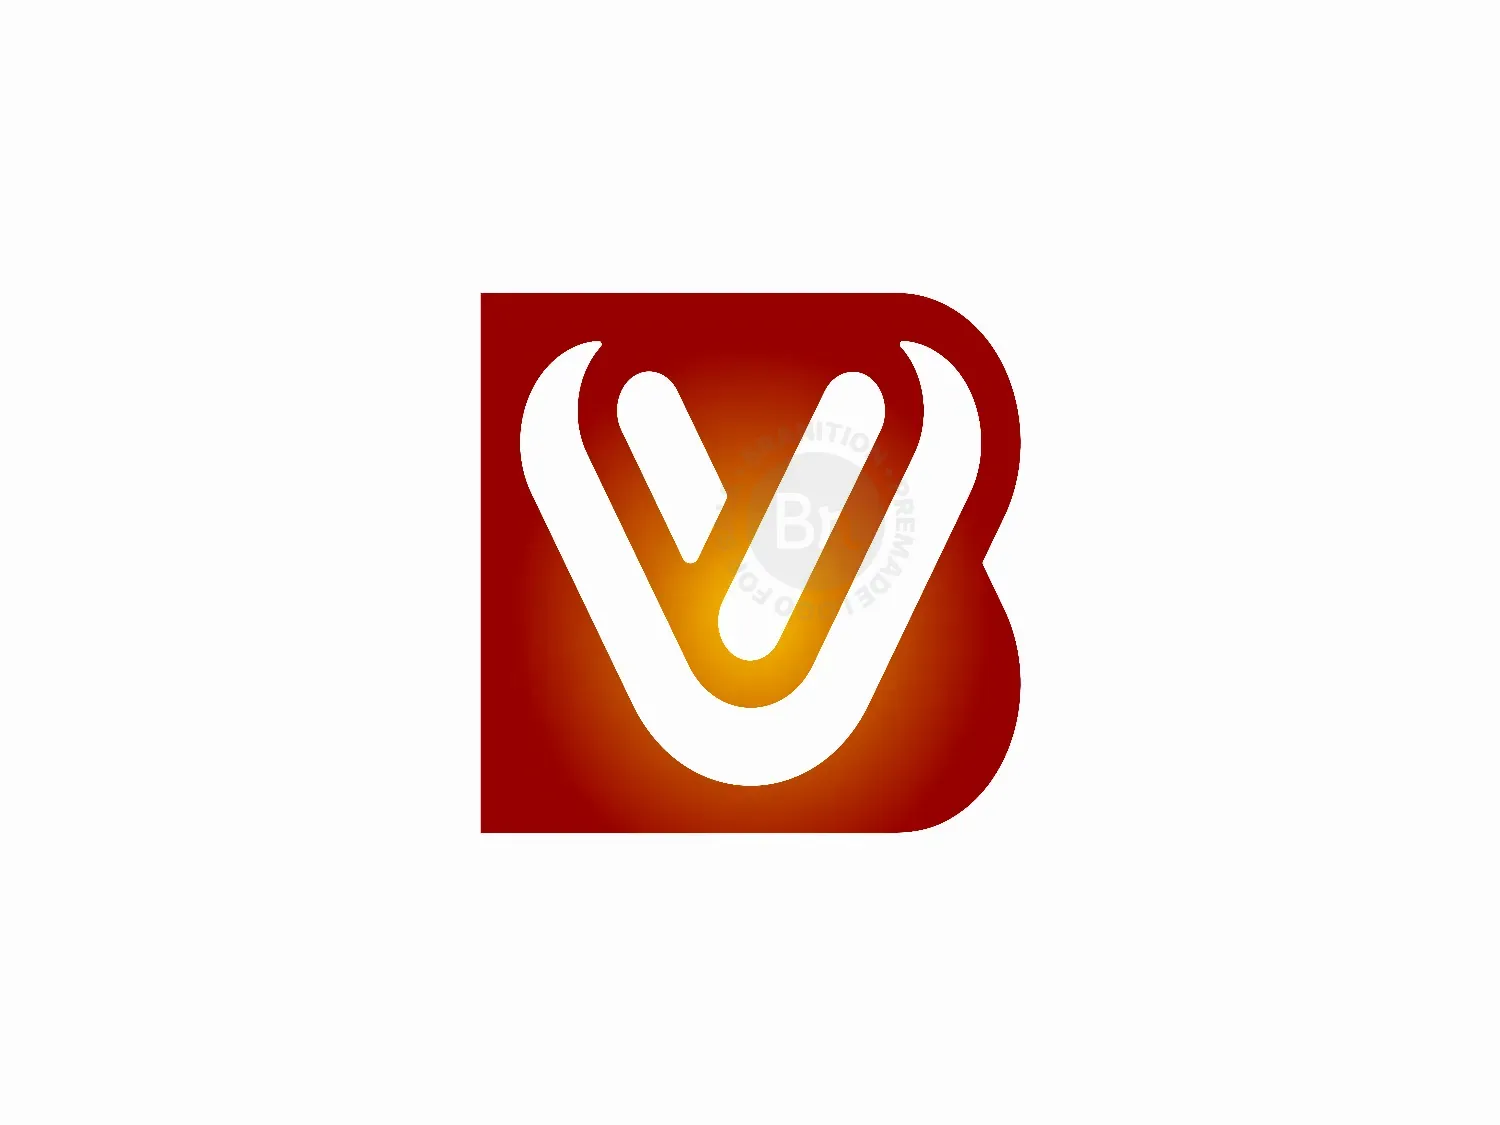 Vb modern letter logo design with swoosh Vector Image